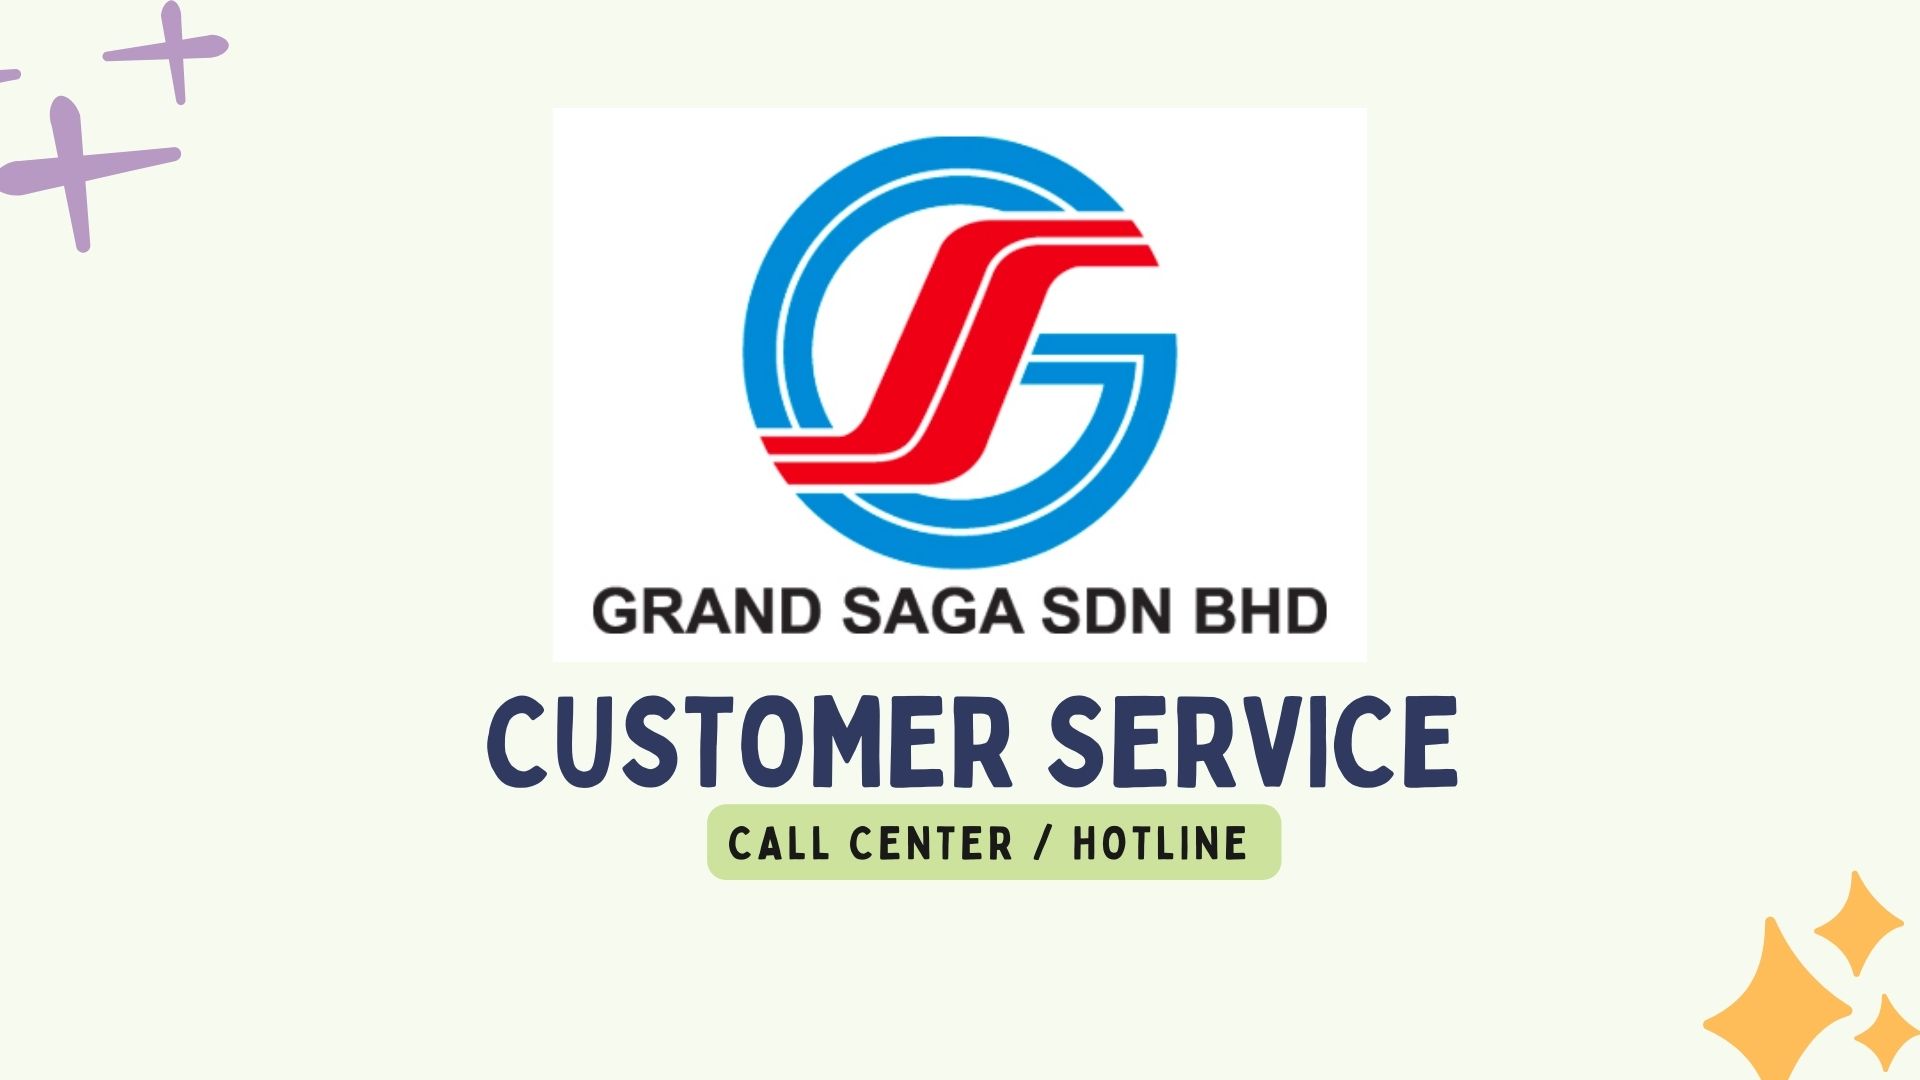 Grand Saga Customer Service